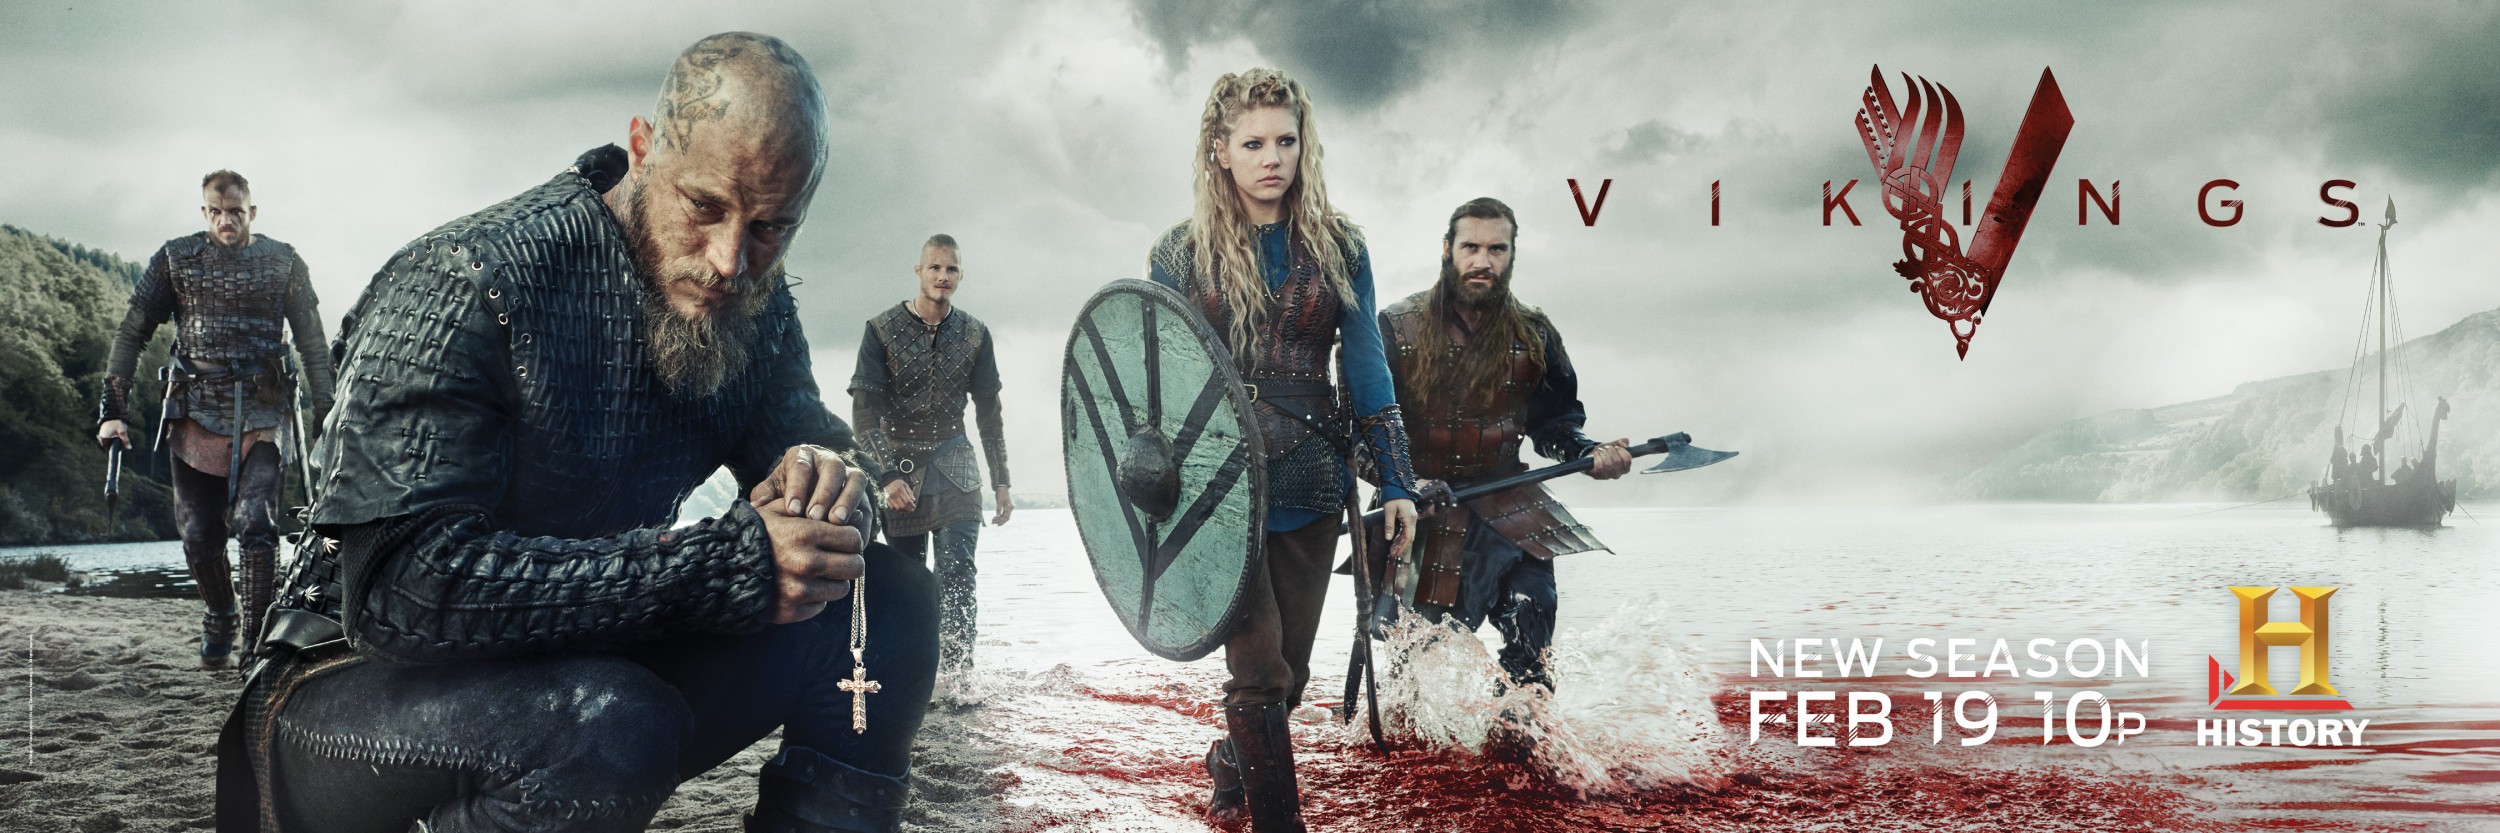 Mega Sized TV Poster Image for Vikings (#12 of 30)